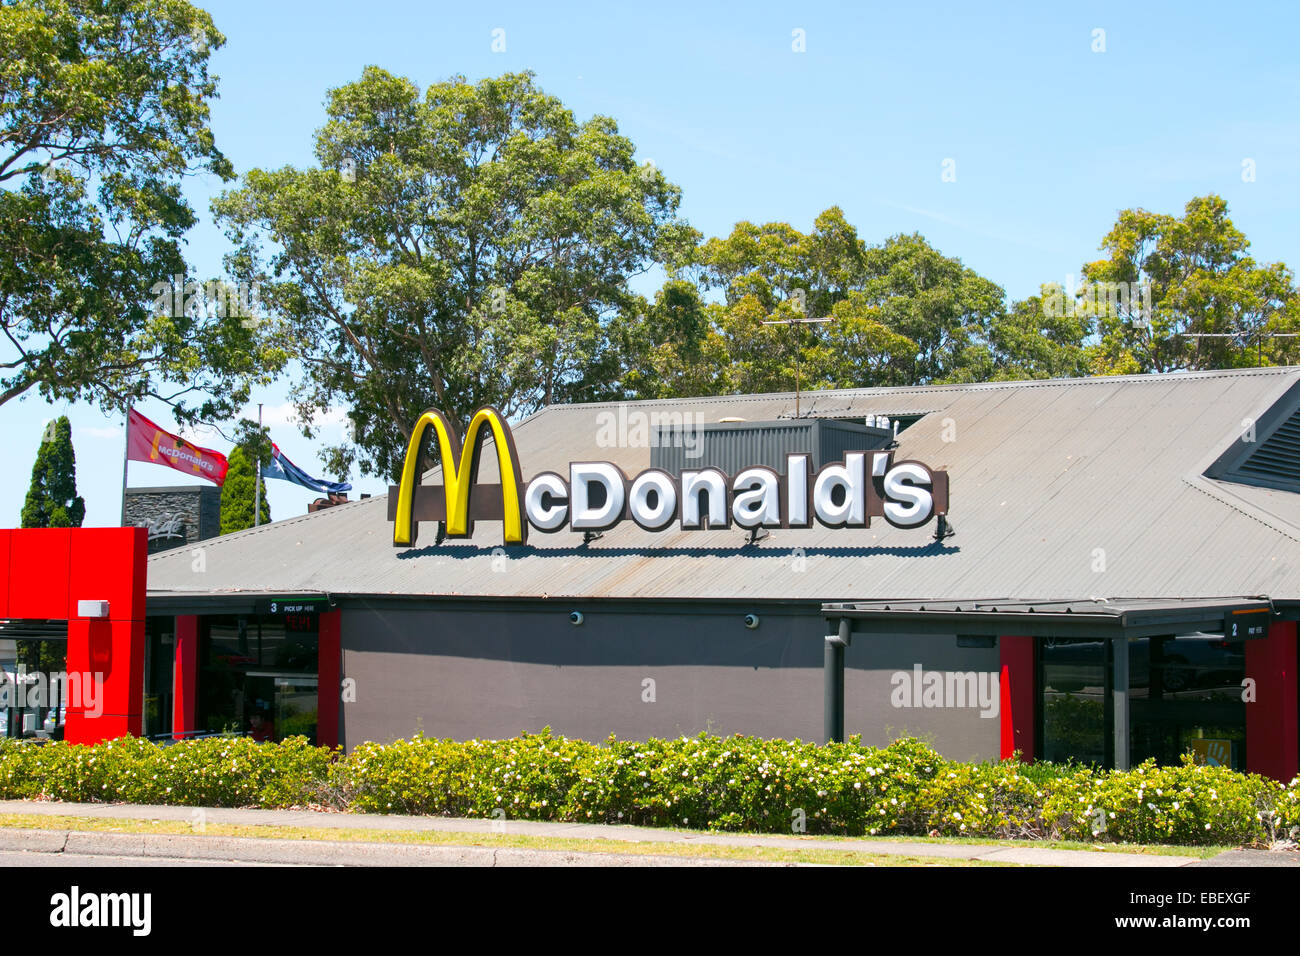 Un restaurant Mcdonald's, de l'Australie dans une banlieue Merrylands dans l'ouest de Sydney, Australie Banque D'Images